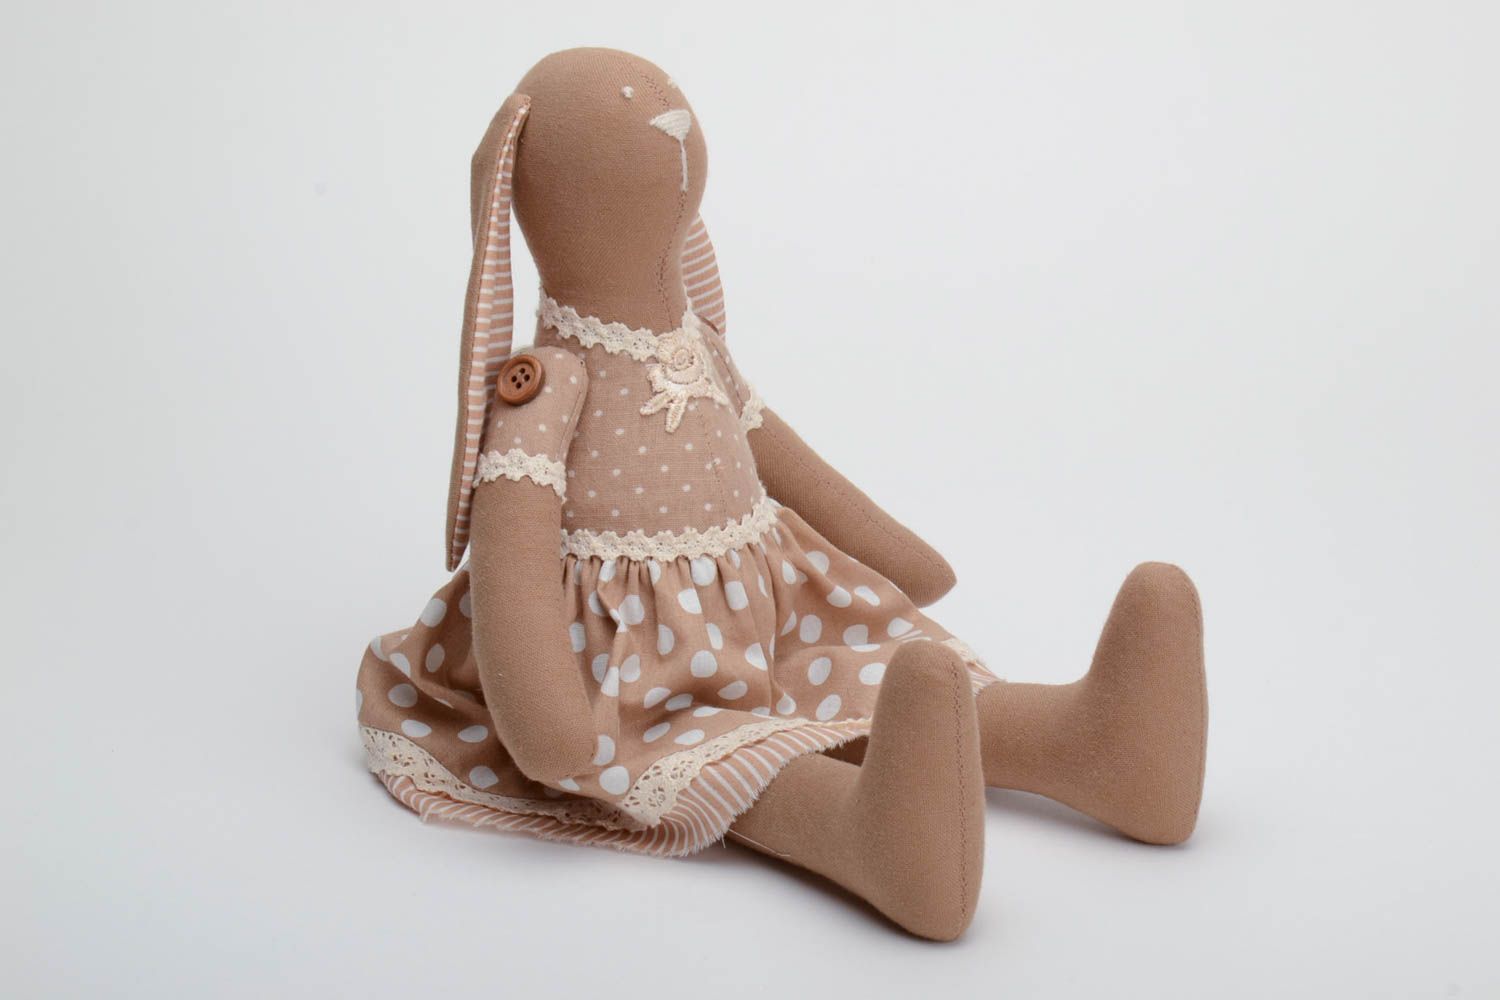 Мягкая кукла ручной работы из хлопка для декора дома или в подарок ребенку Зайка фото 2